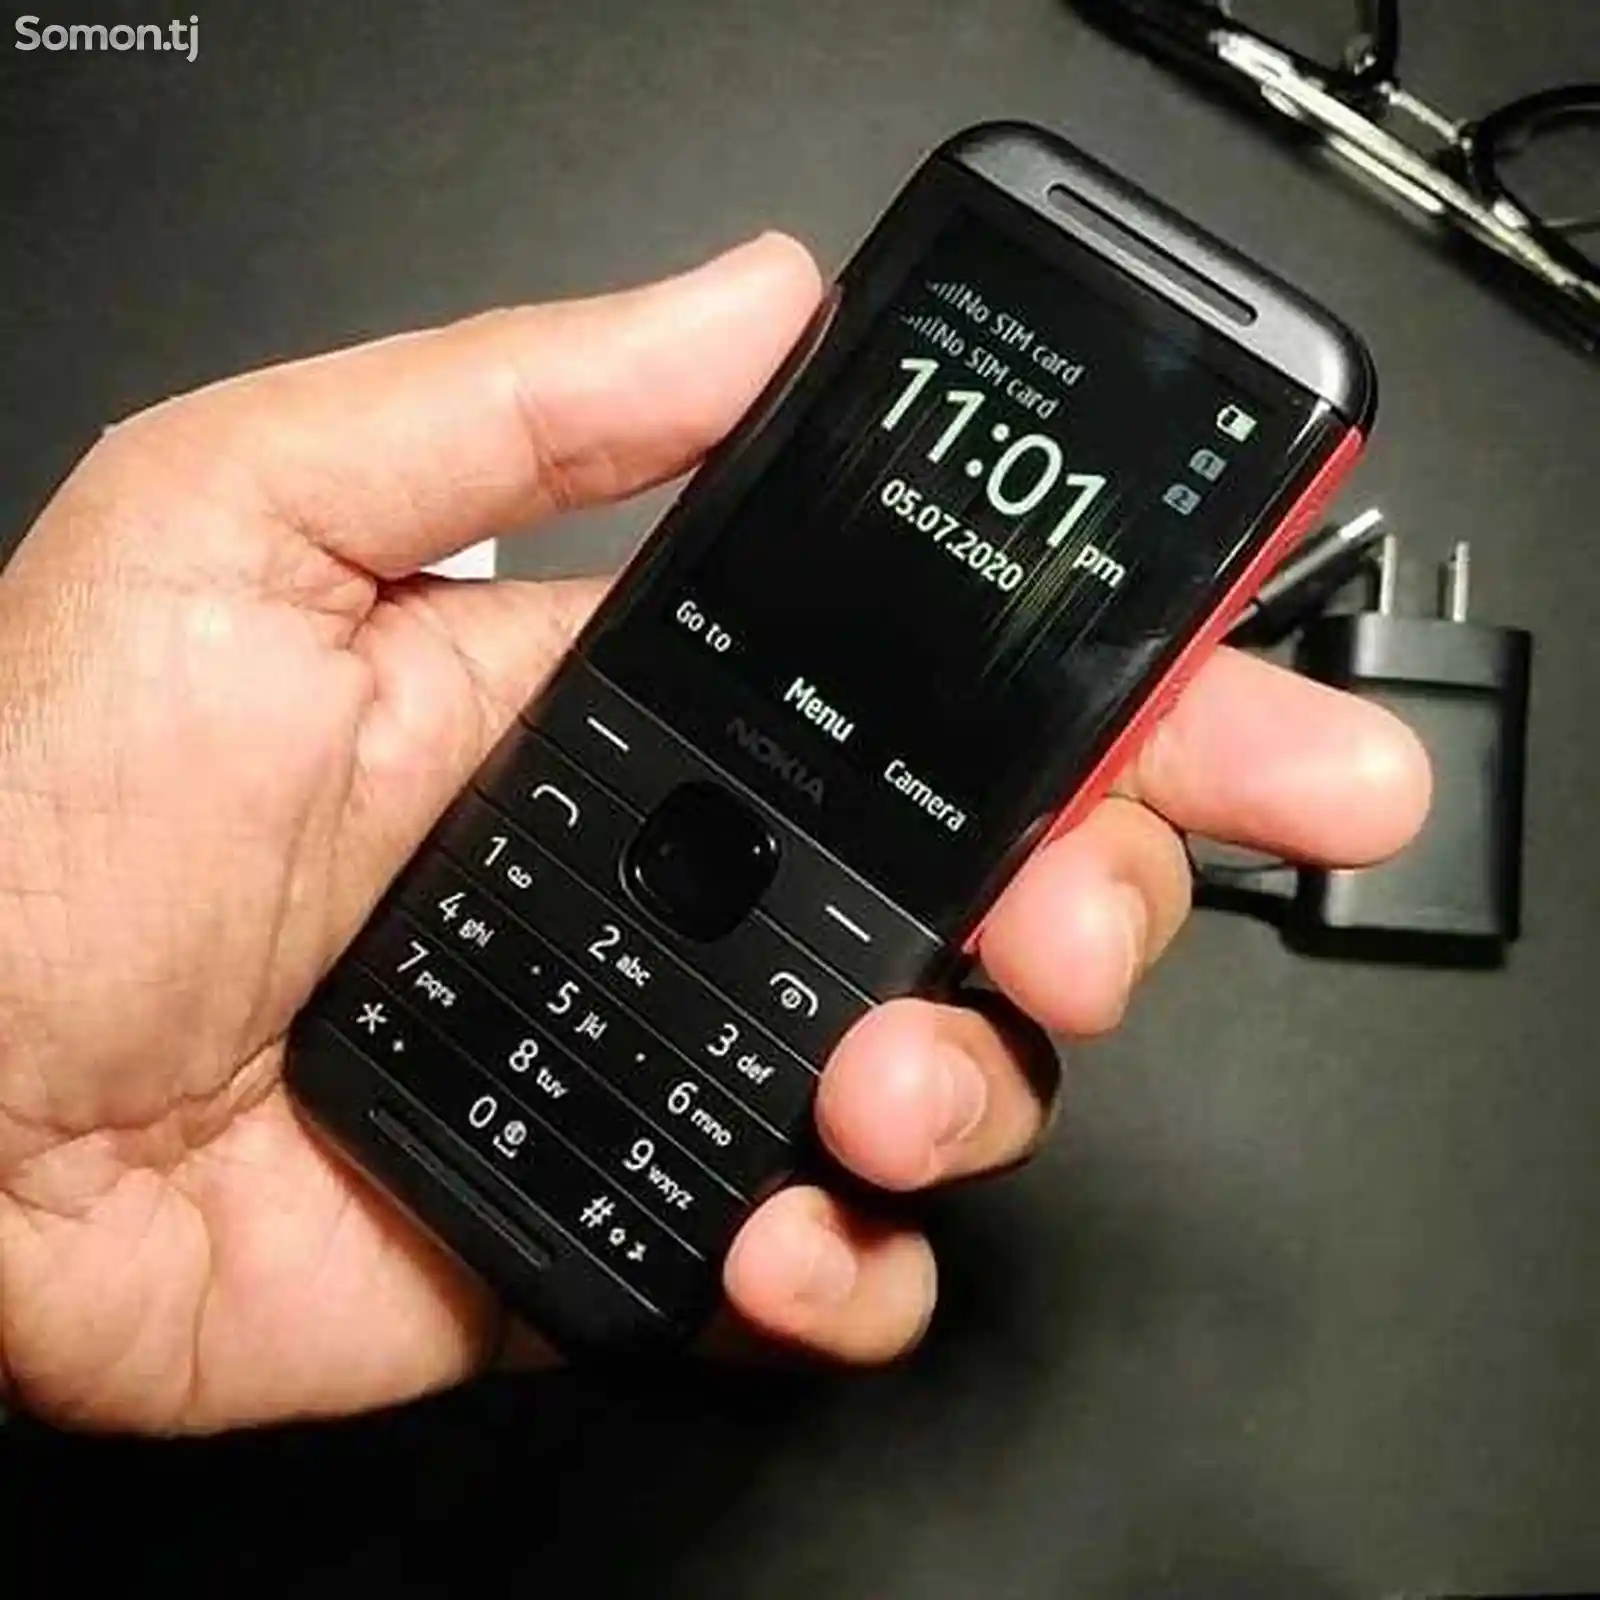 Nokia 5310-6